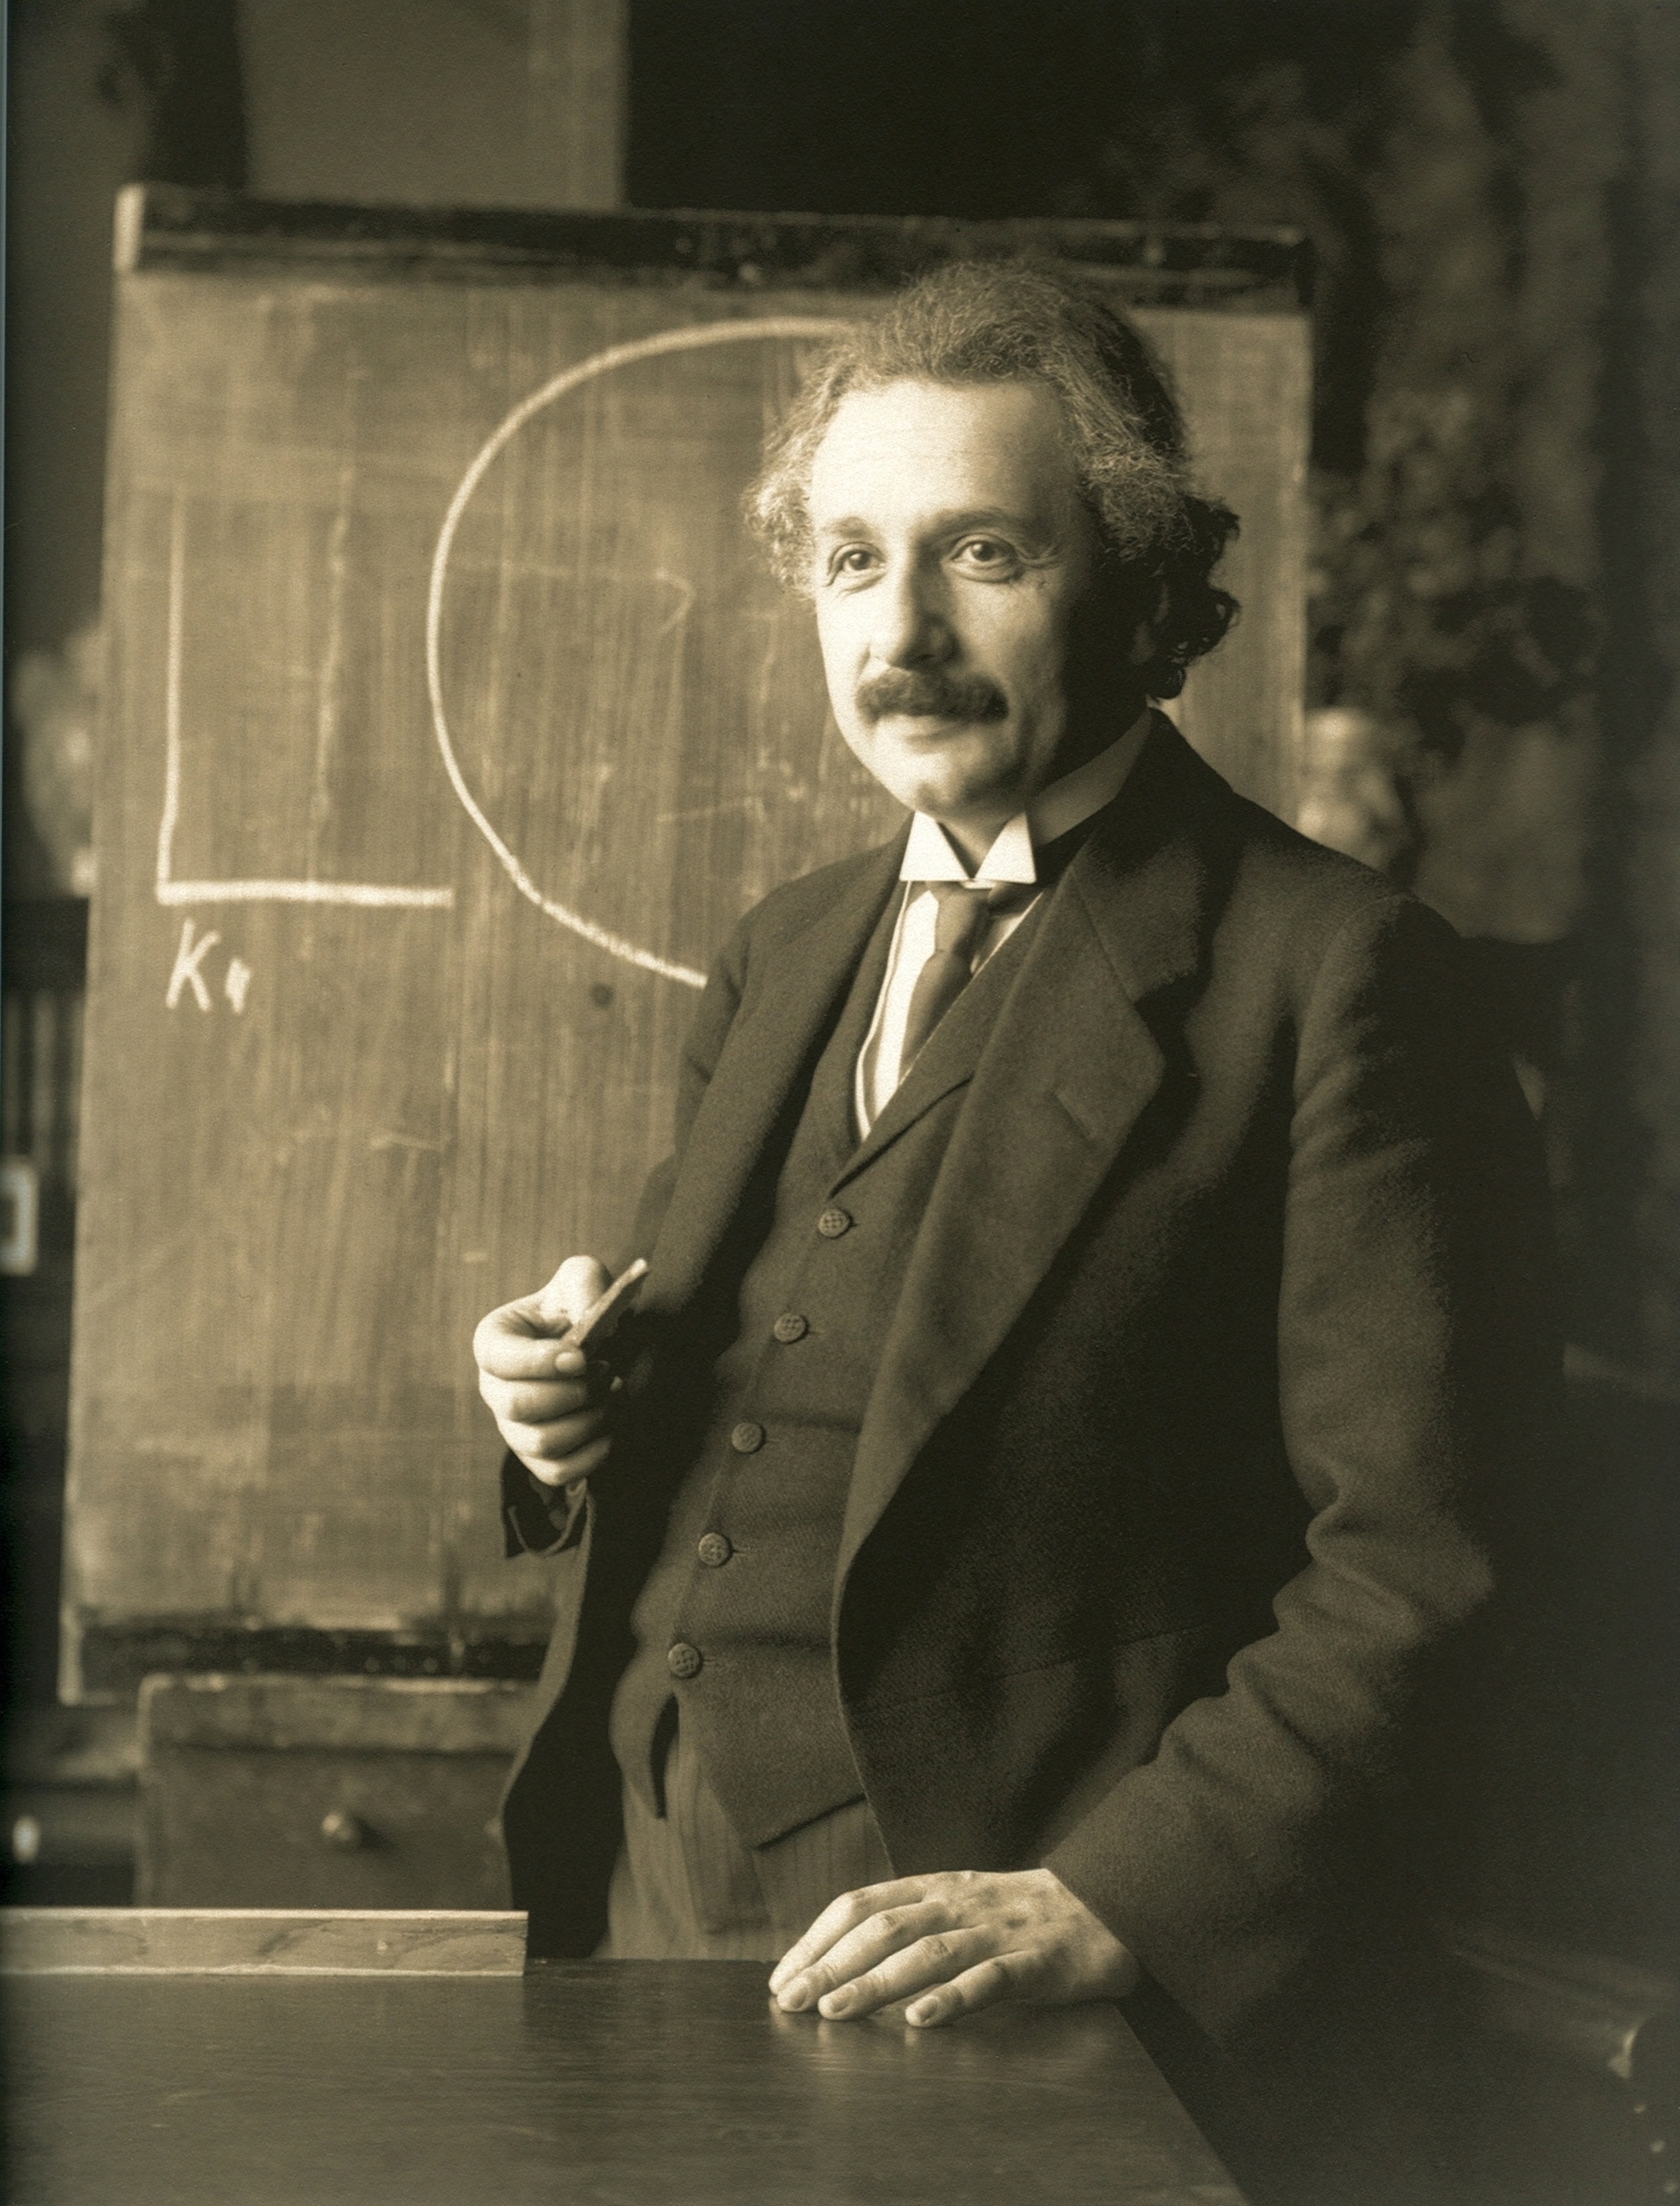 アインシュタイン ([Wikimedia commons](https://commons.wikimedia.org/wiki/File:Einstein_1921_by_F_Schmutzer_-_restoration.jpg))